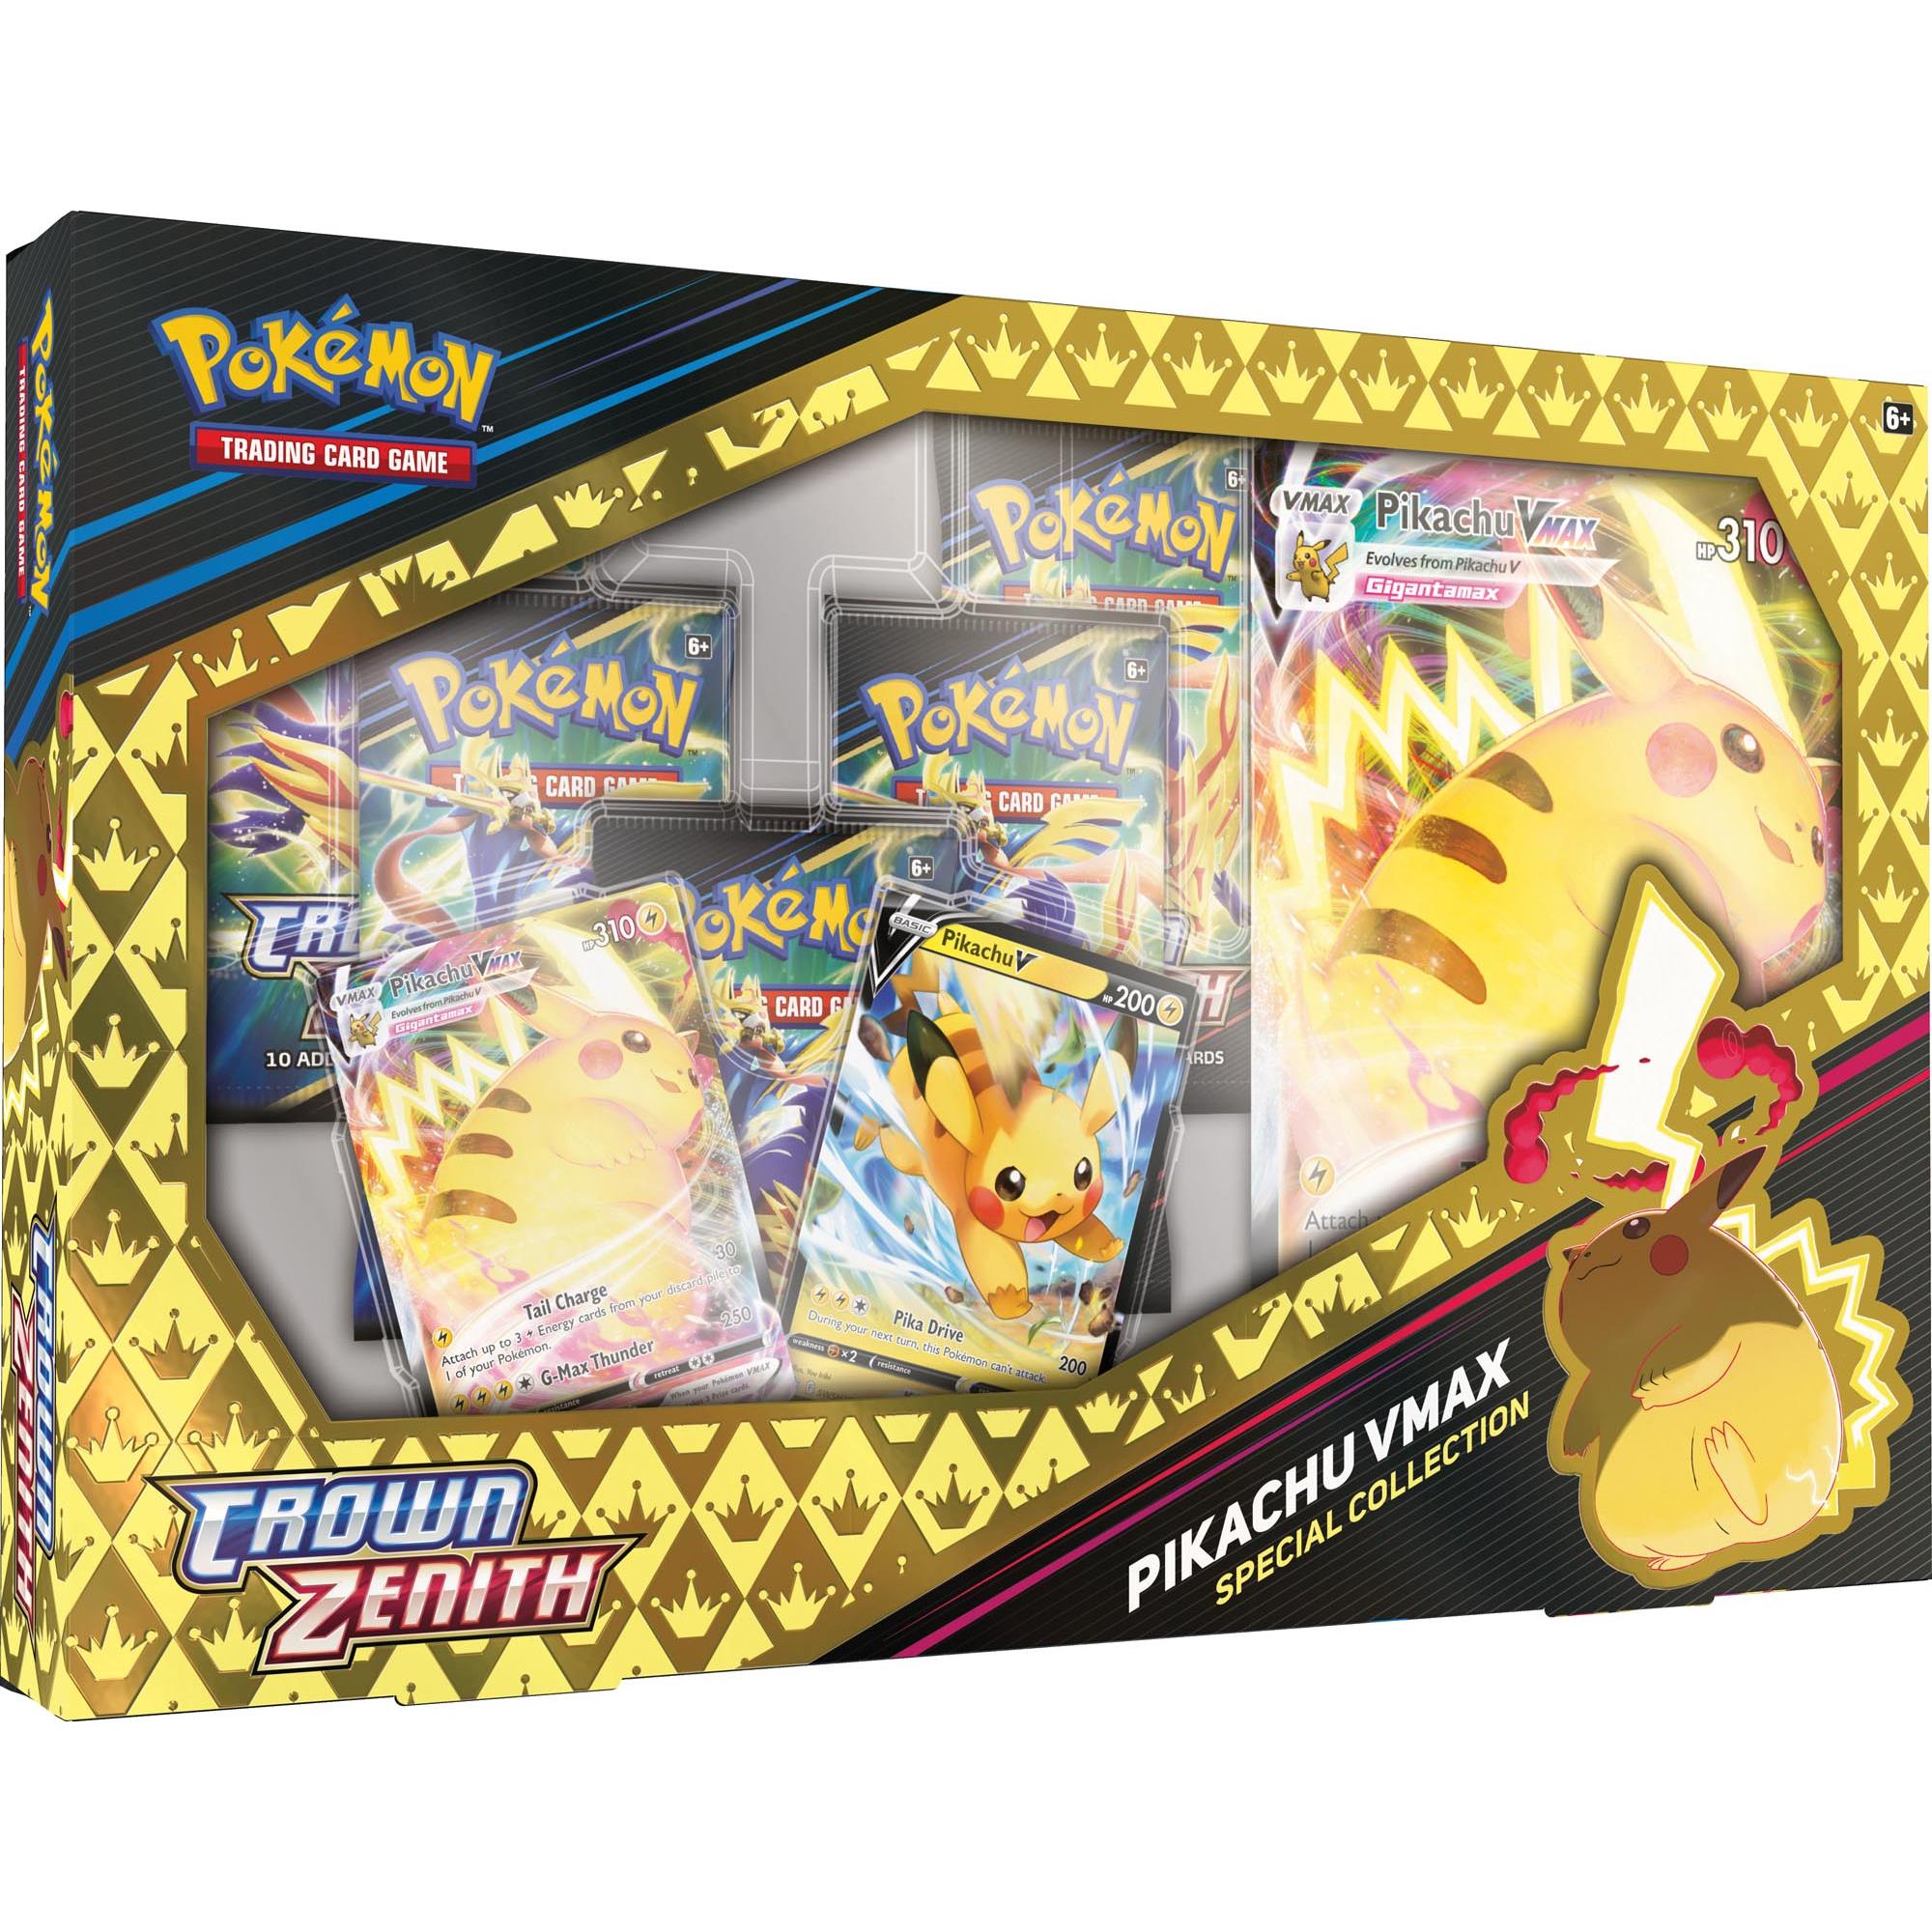 pokemon trading card game - crown zenith pikachu vmax box